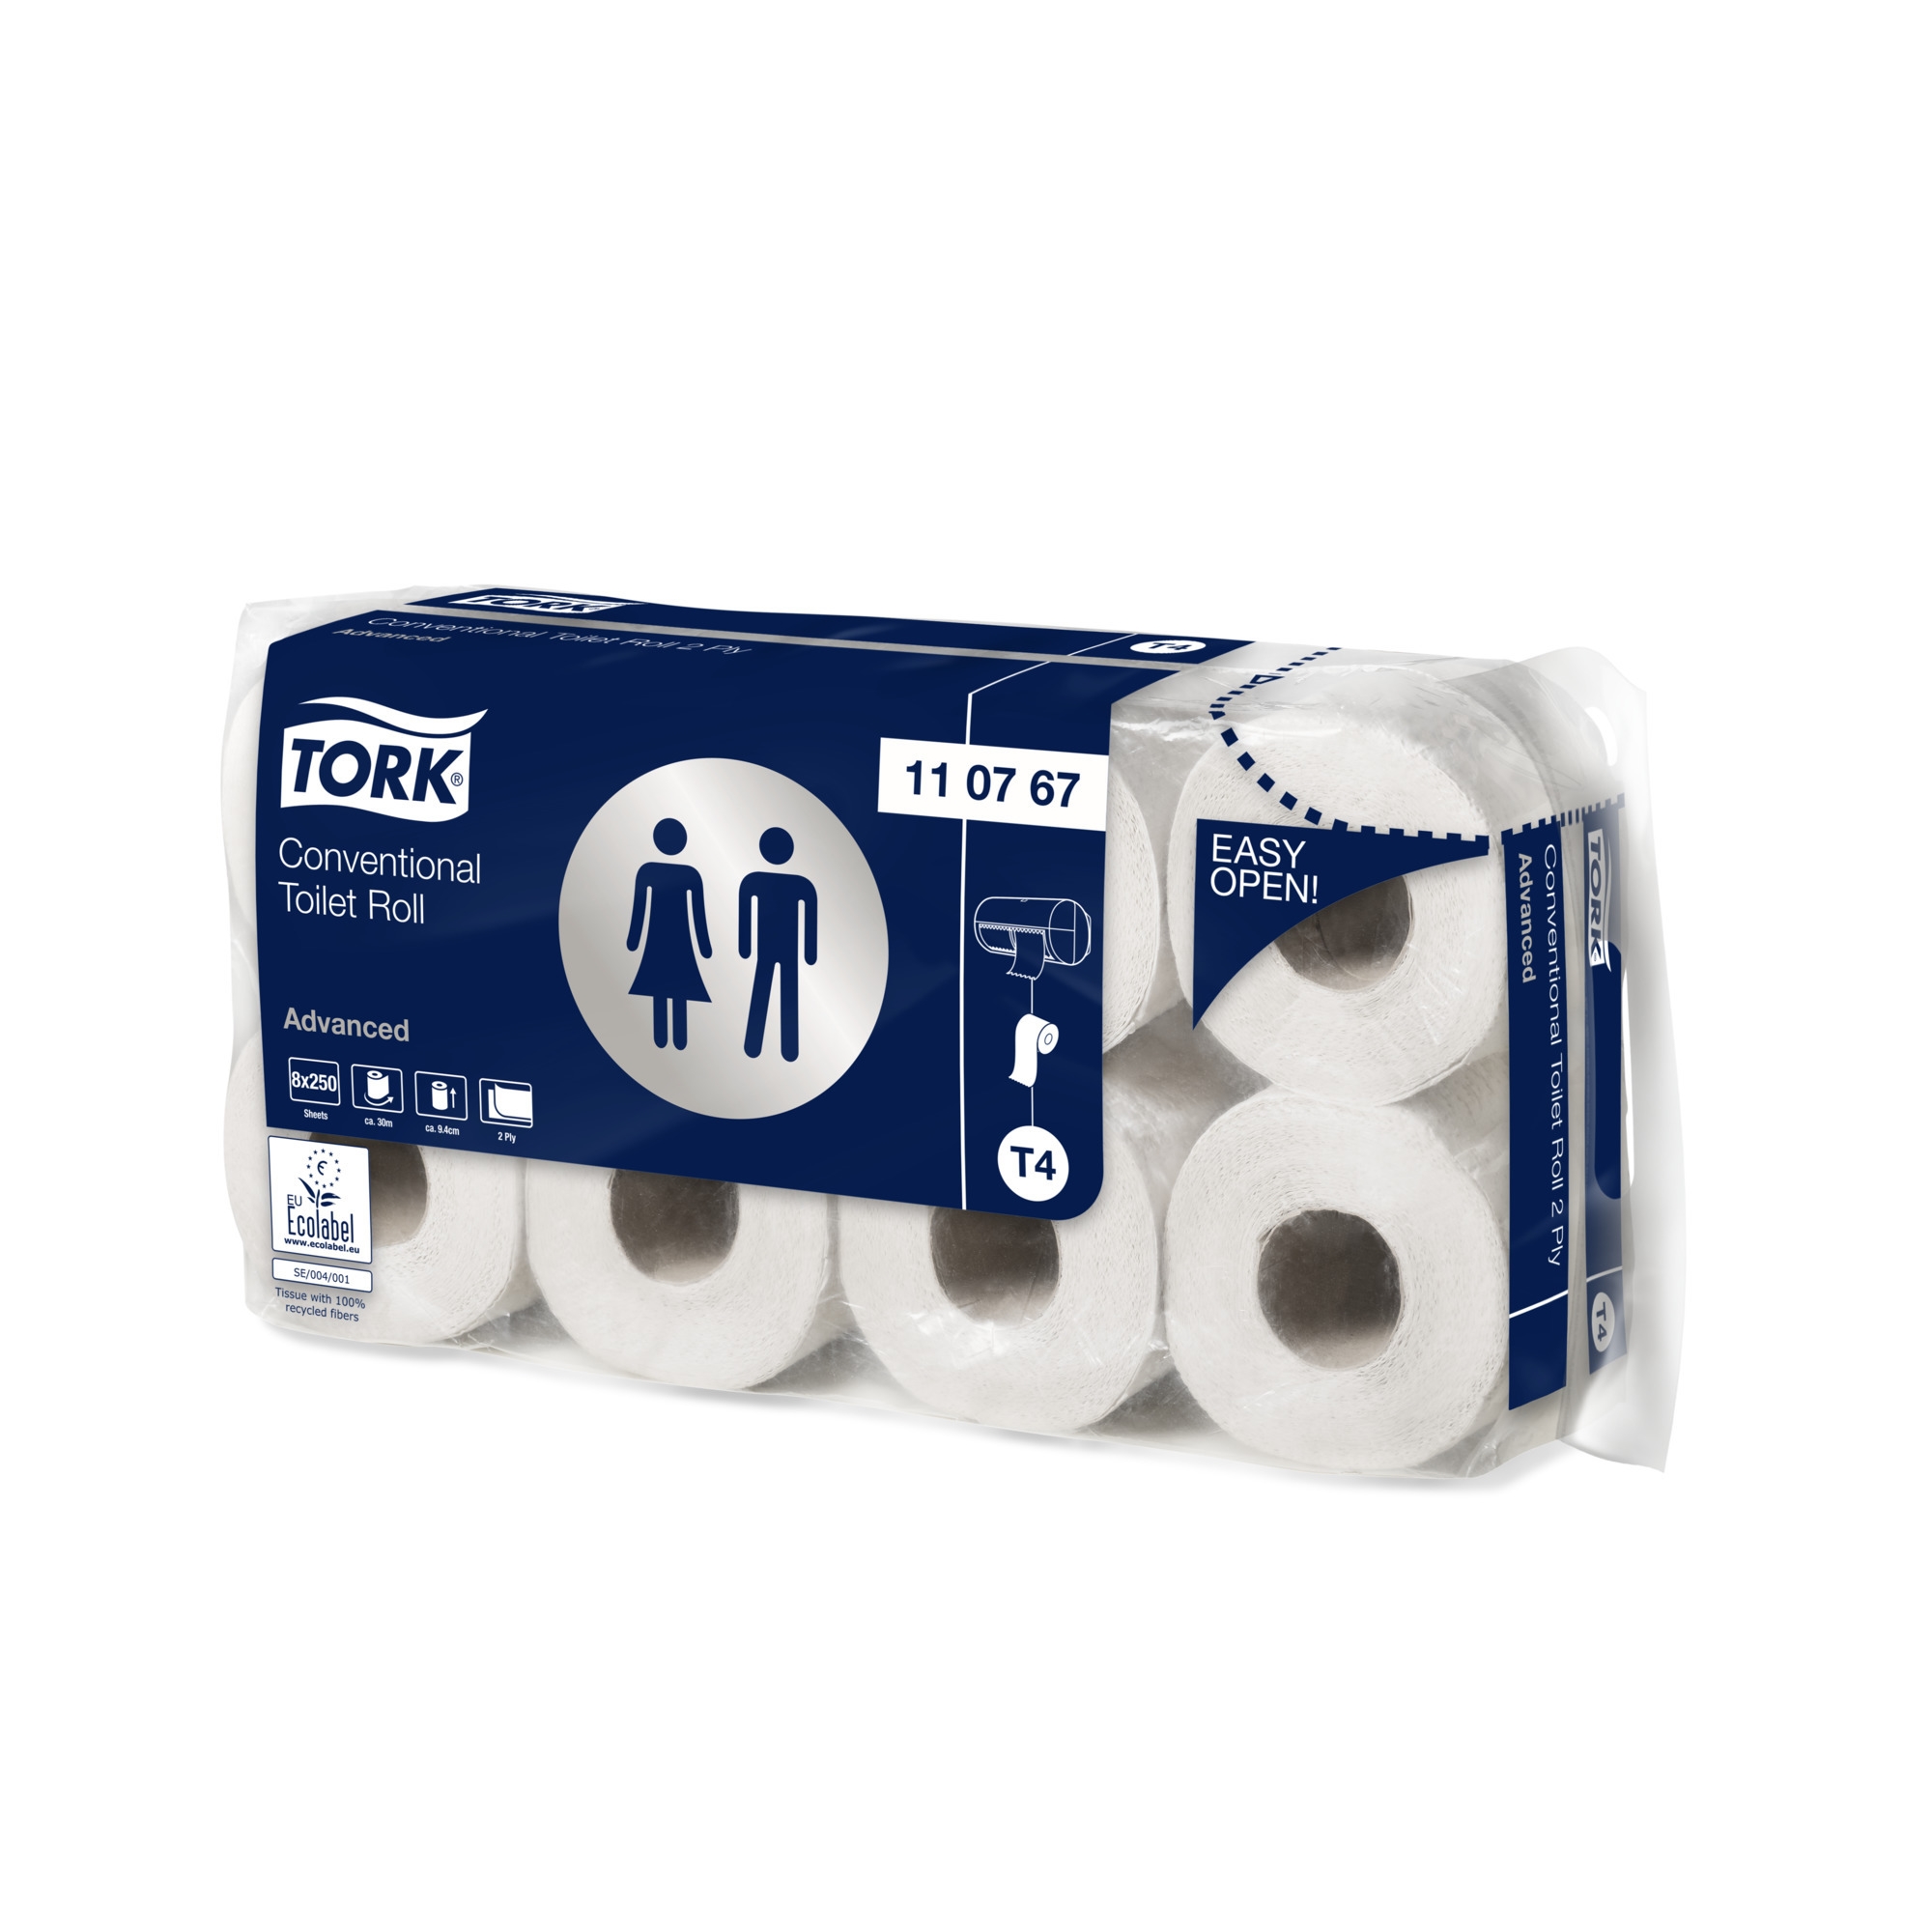 Tork toaletní papír konvenční role Advanced, 2vrstvý, bílá, T4